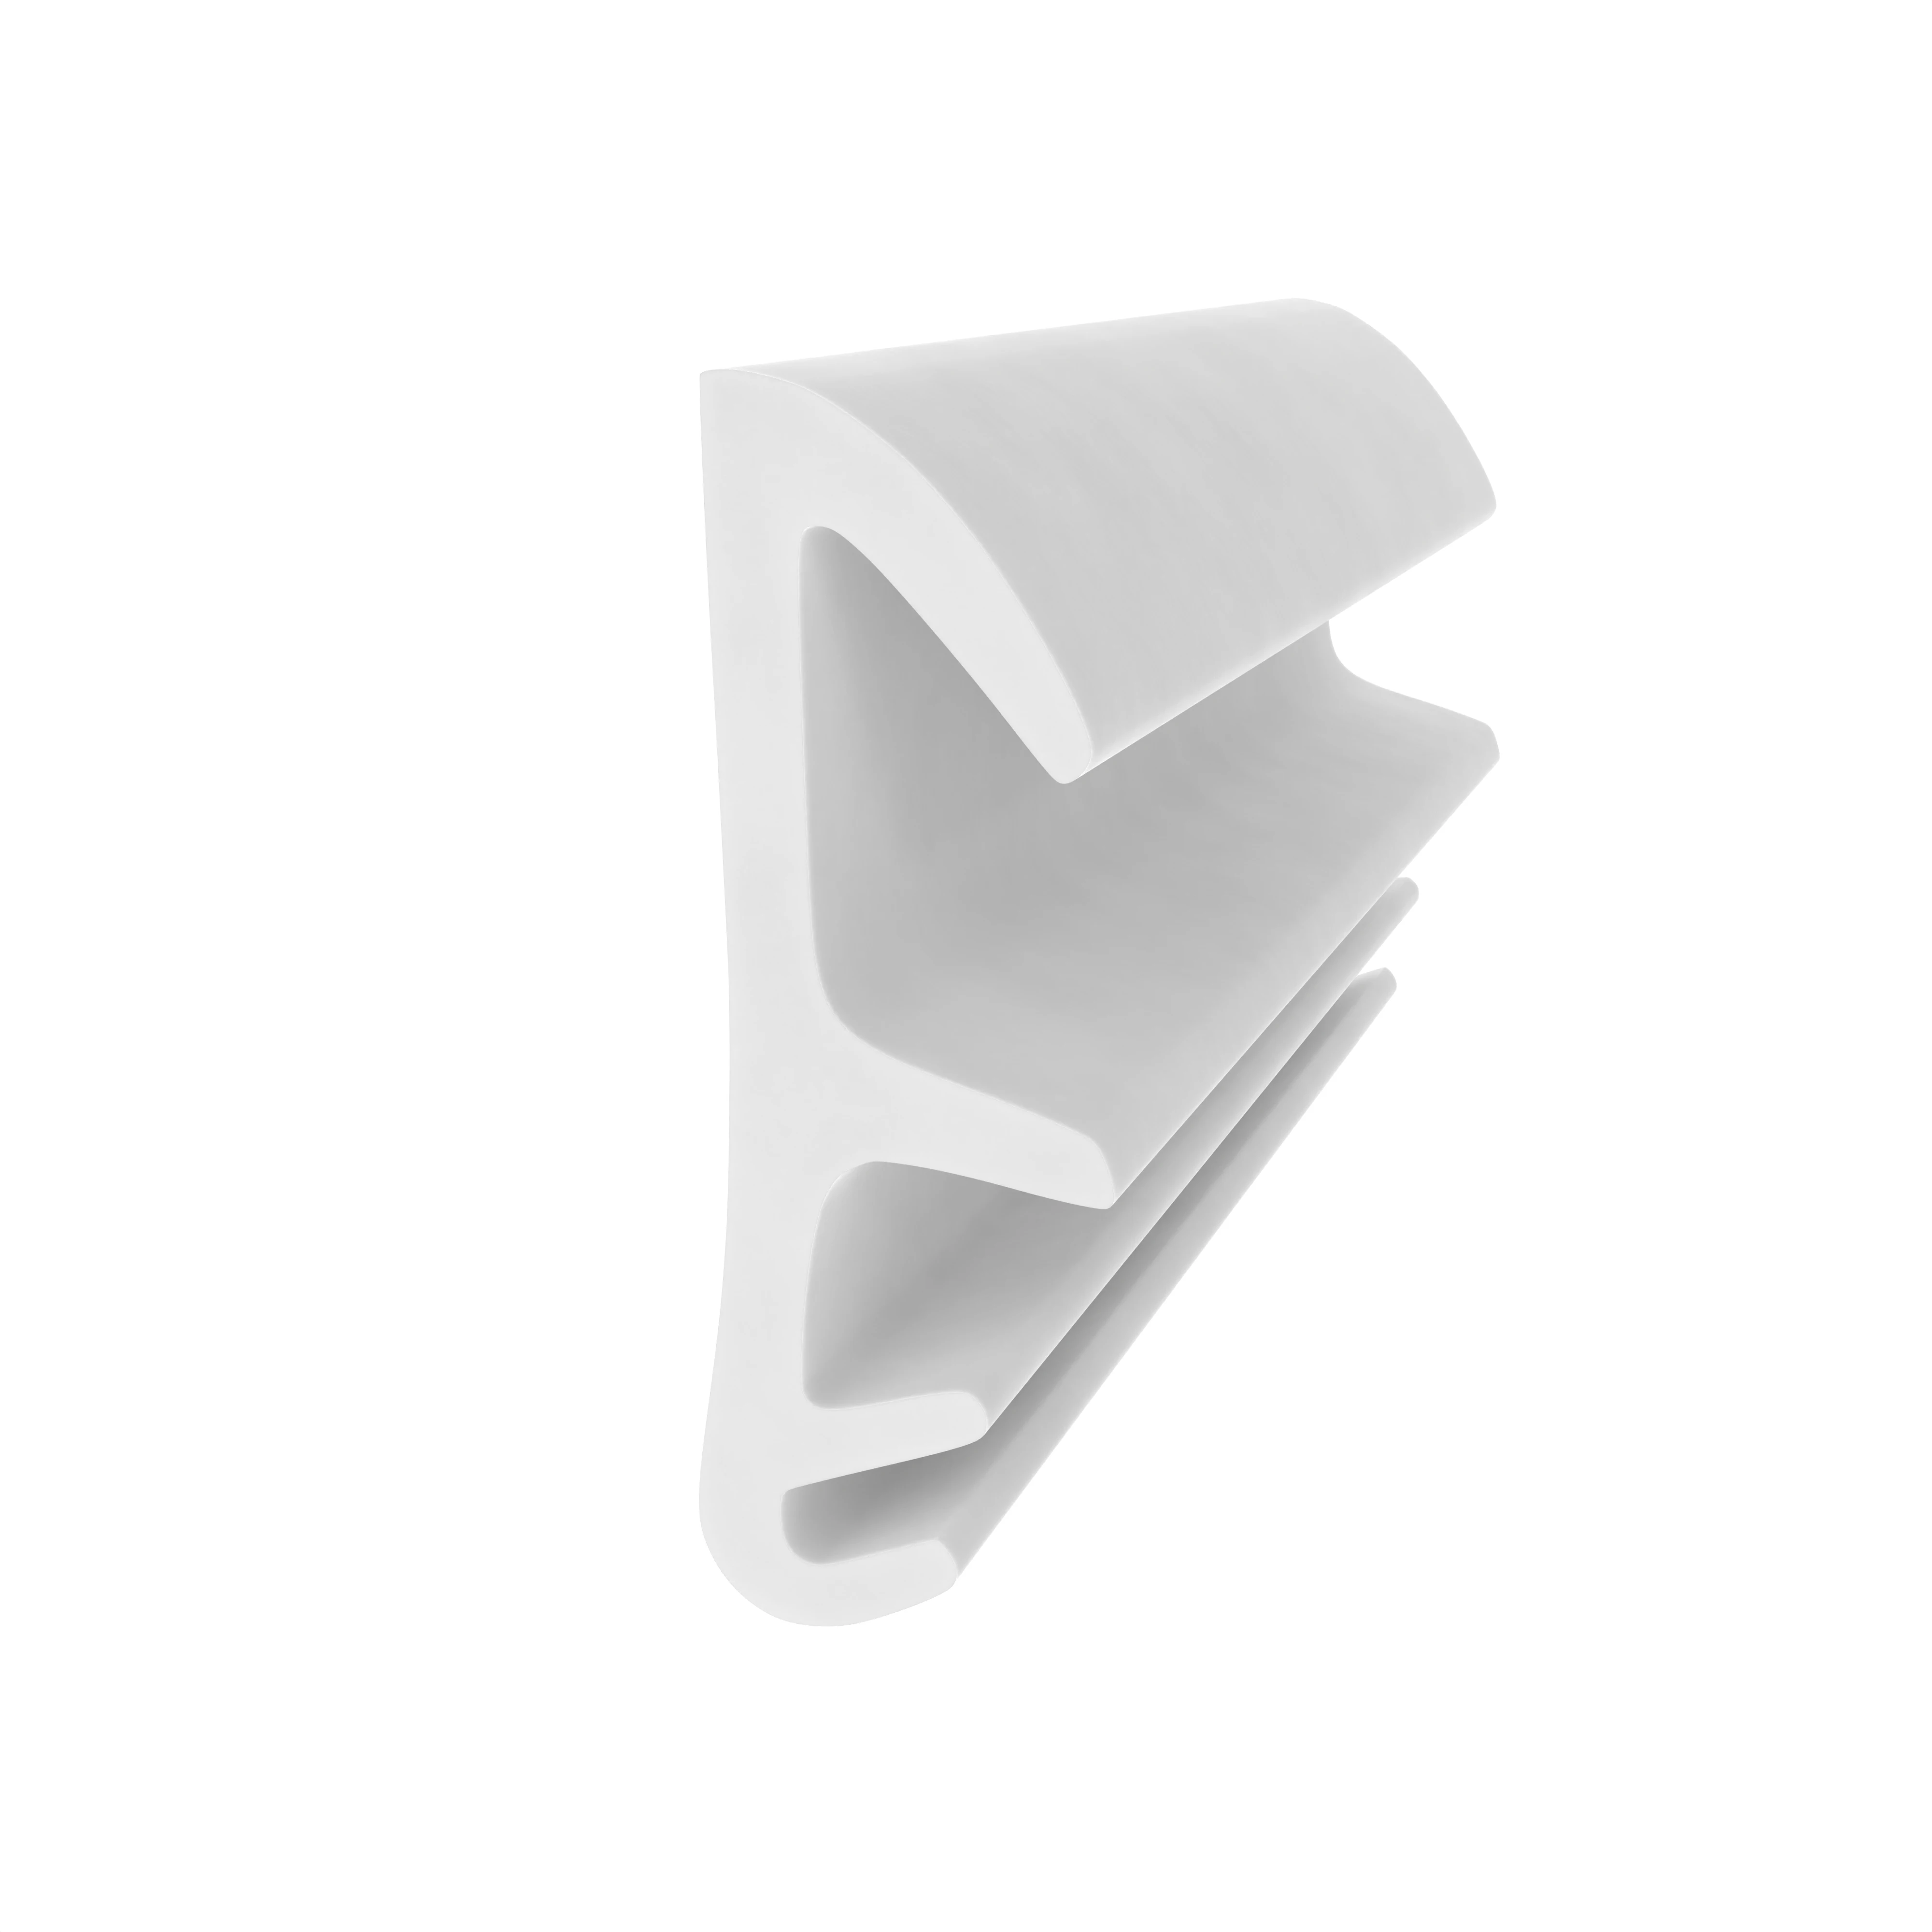 Flügelfanzdichtung für Holzelemente | 10 mm Falzhöhe | Farbe: weiß